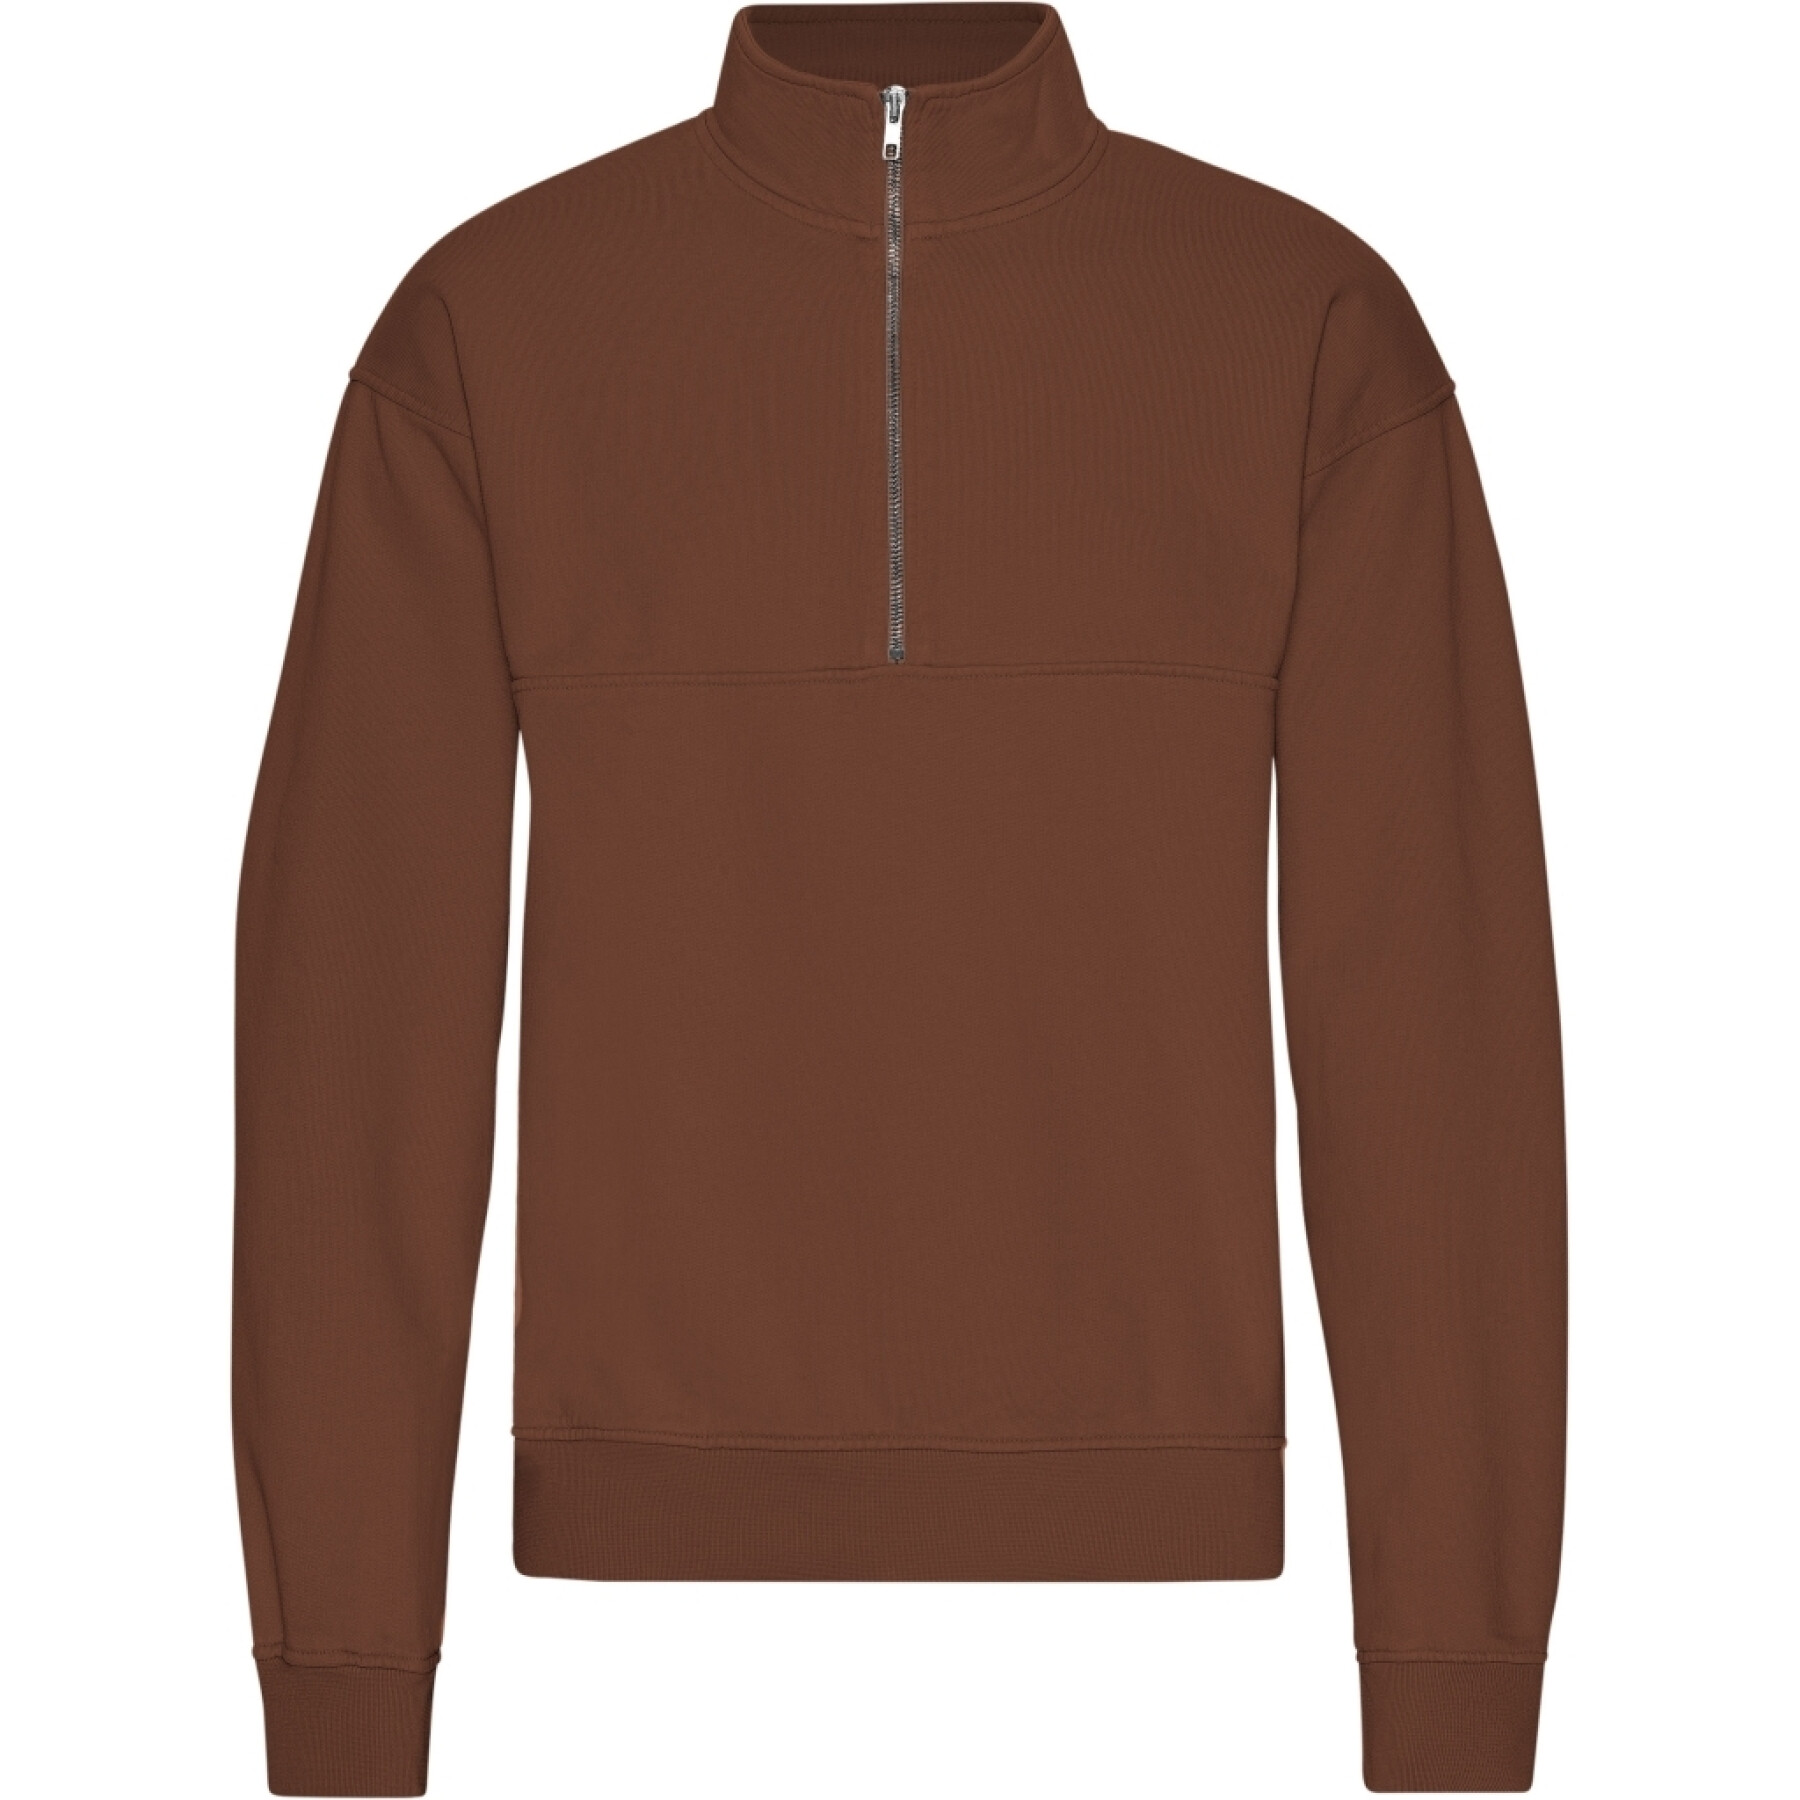 1/4 zip sweatshirt Colorful Standard Organic Cinnamon Brown